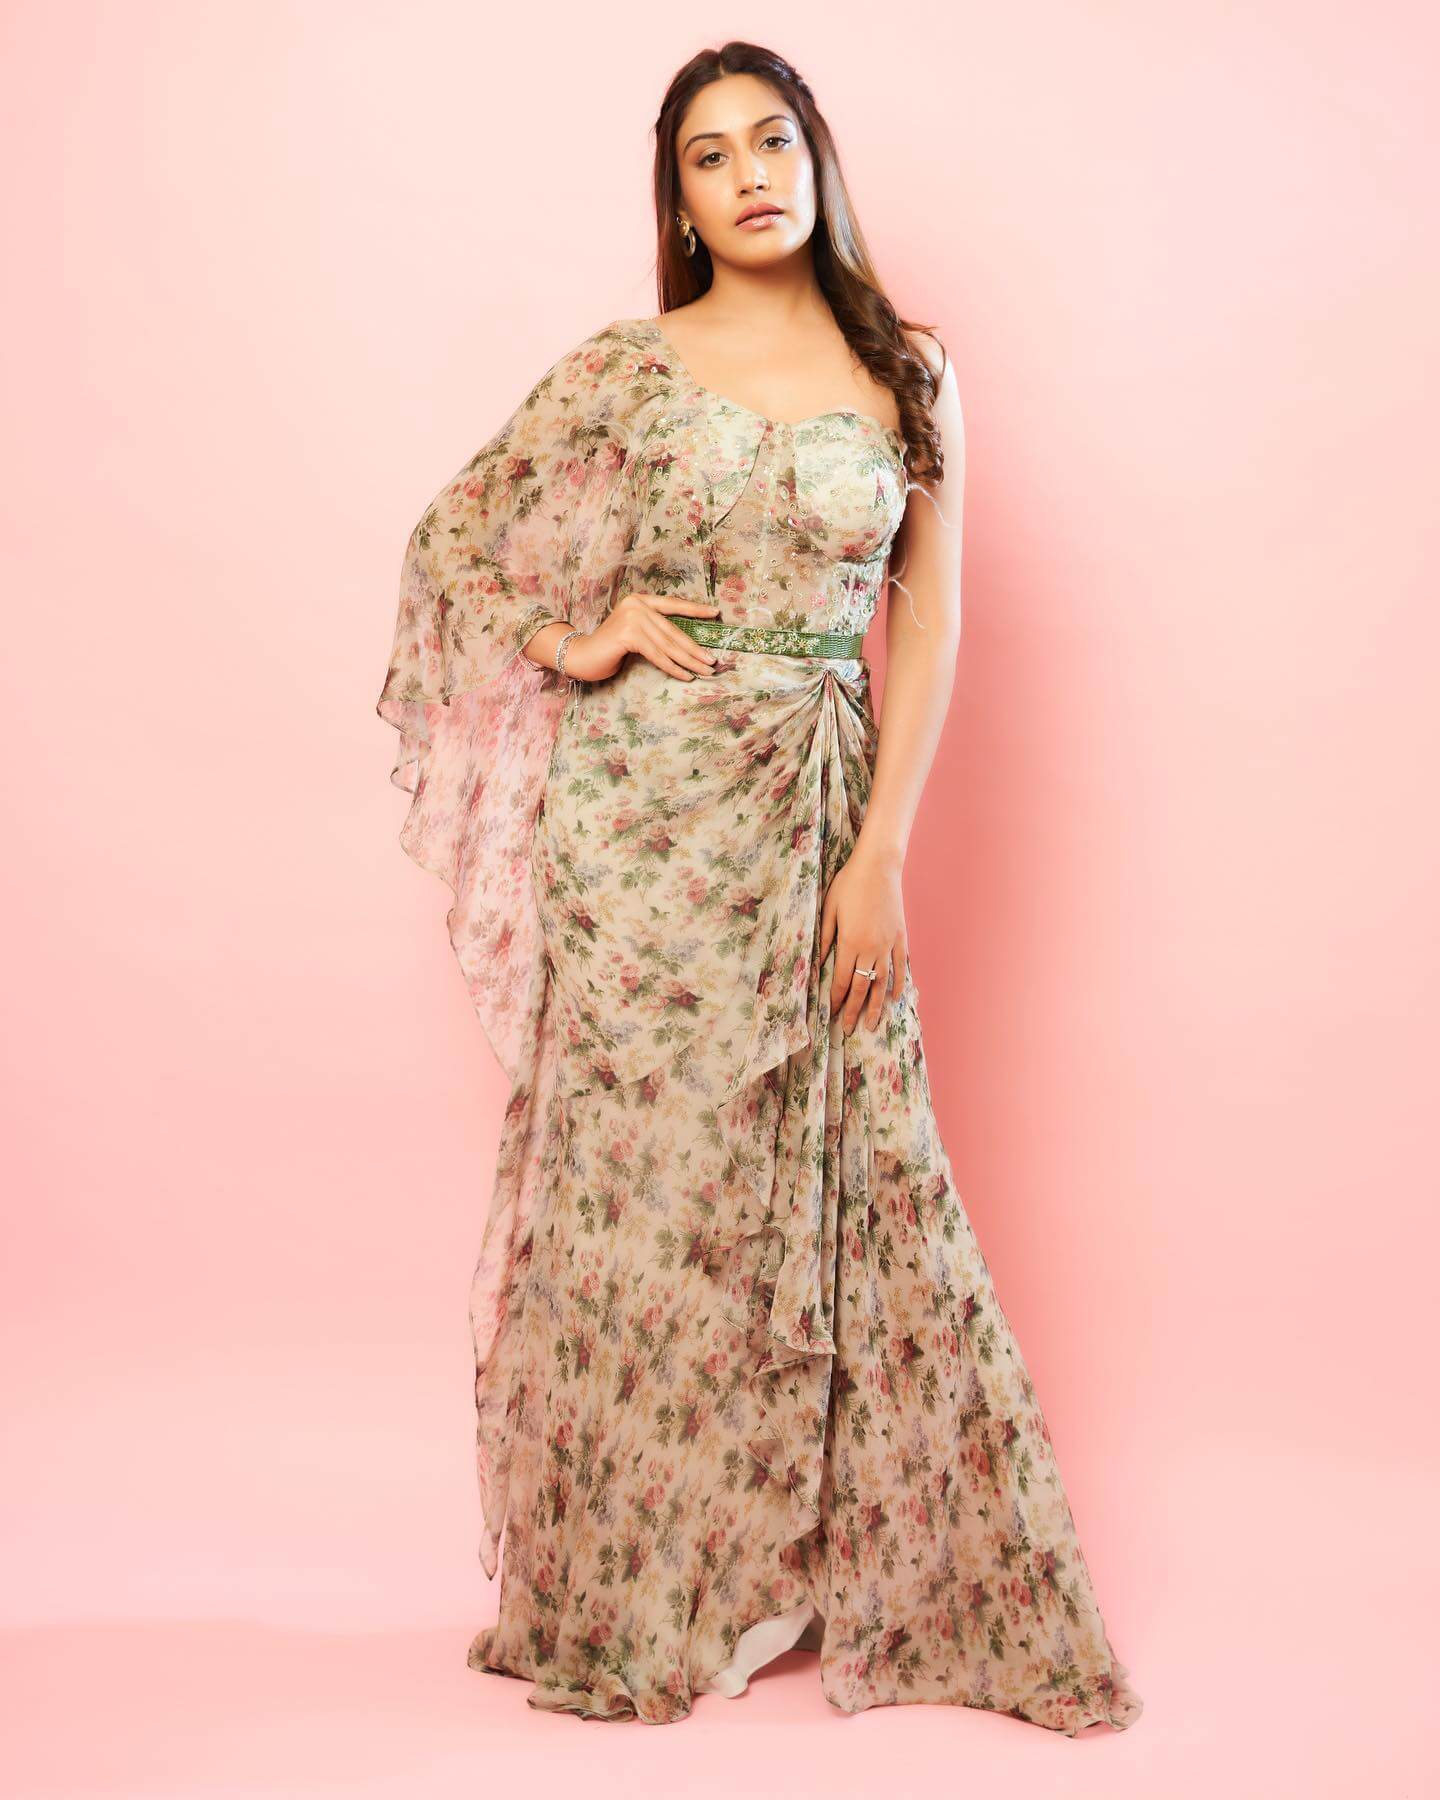 Surbhi Chandna Look Flattering As She Flaunts Her Light Brown Printed One Shoulder Dress